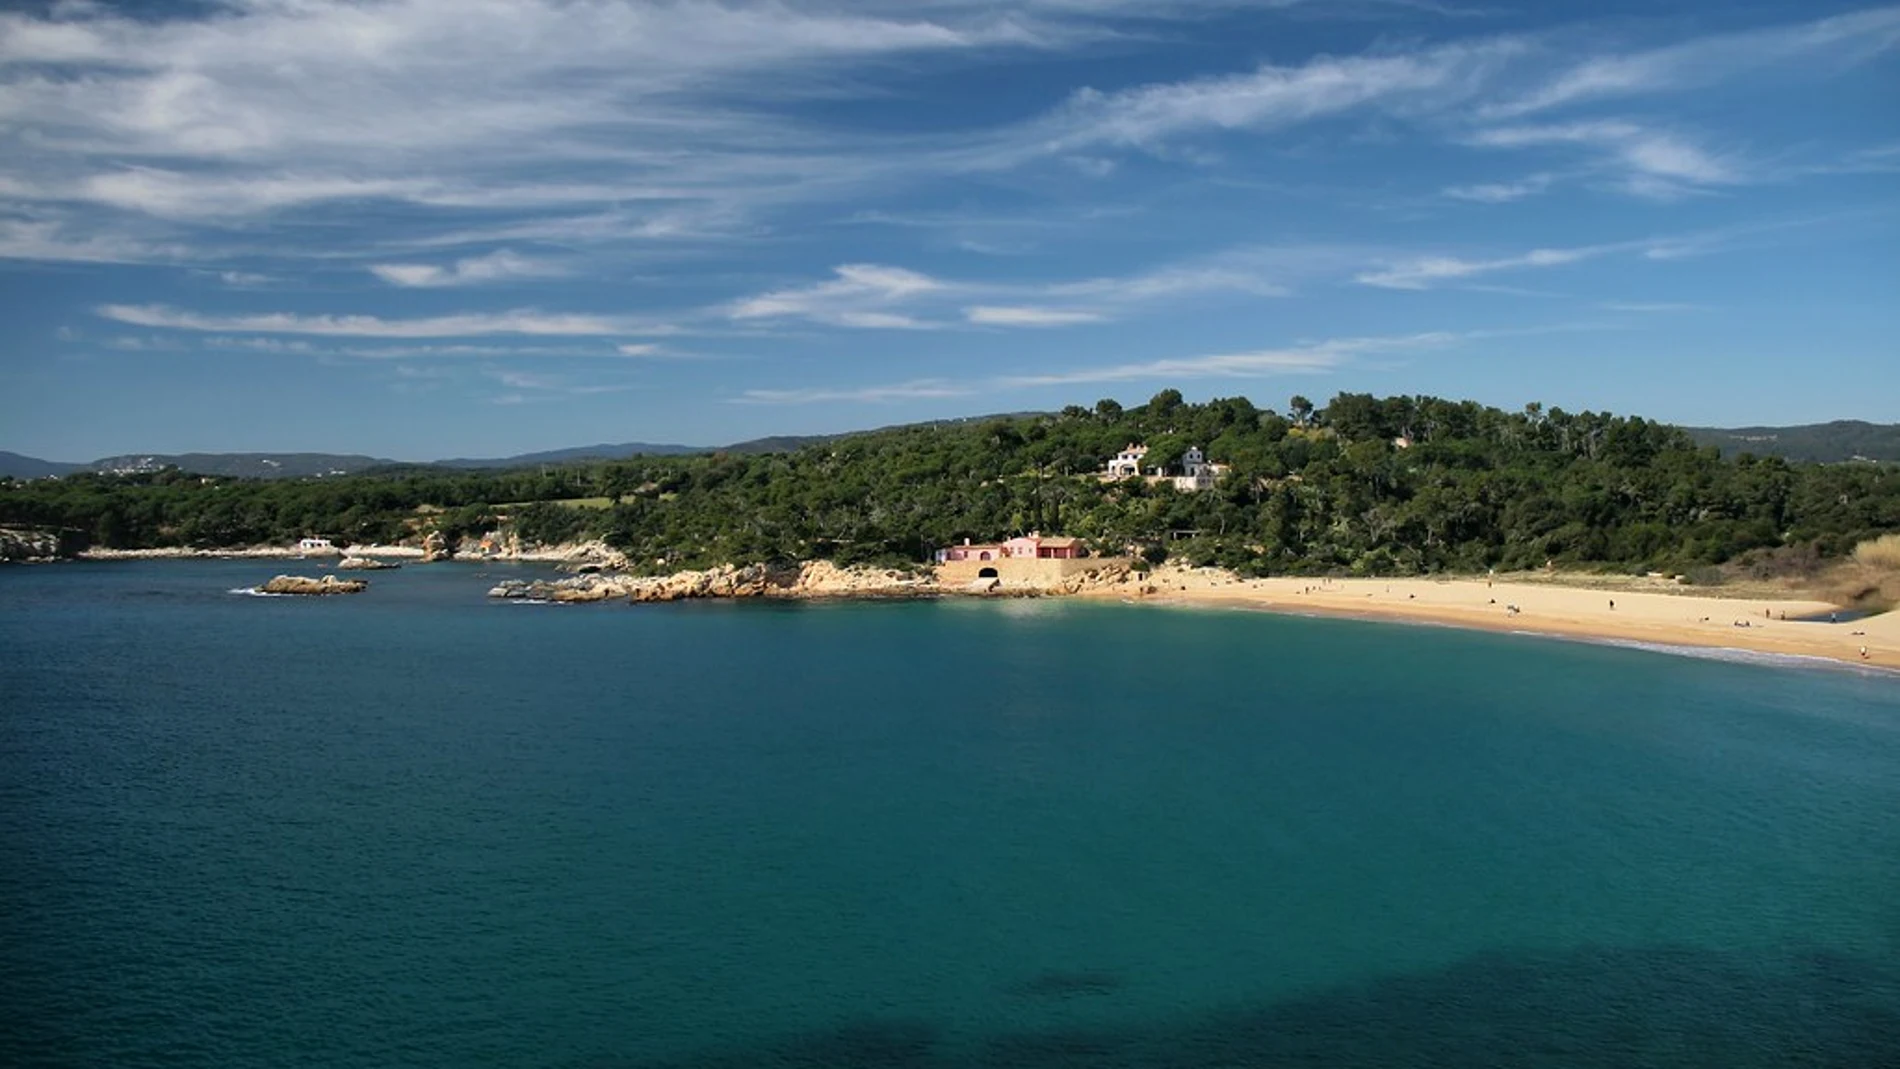 La playa del Castell, en Palamós, es una de las más conocidas de la Costa Brava (Girona).